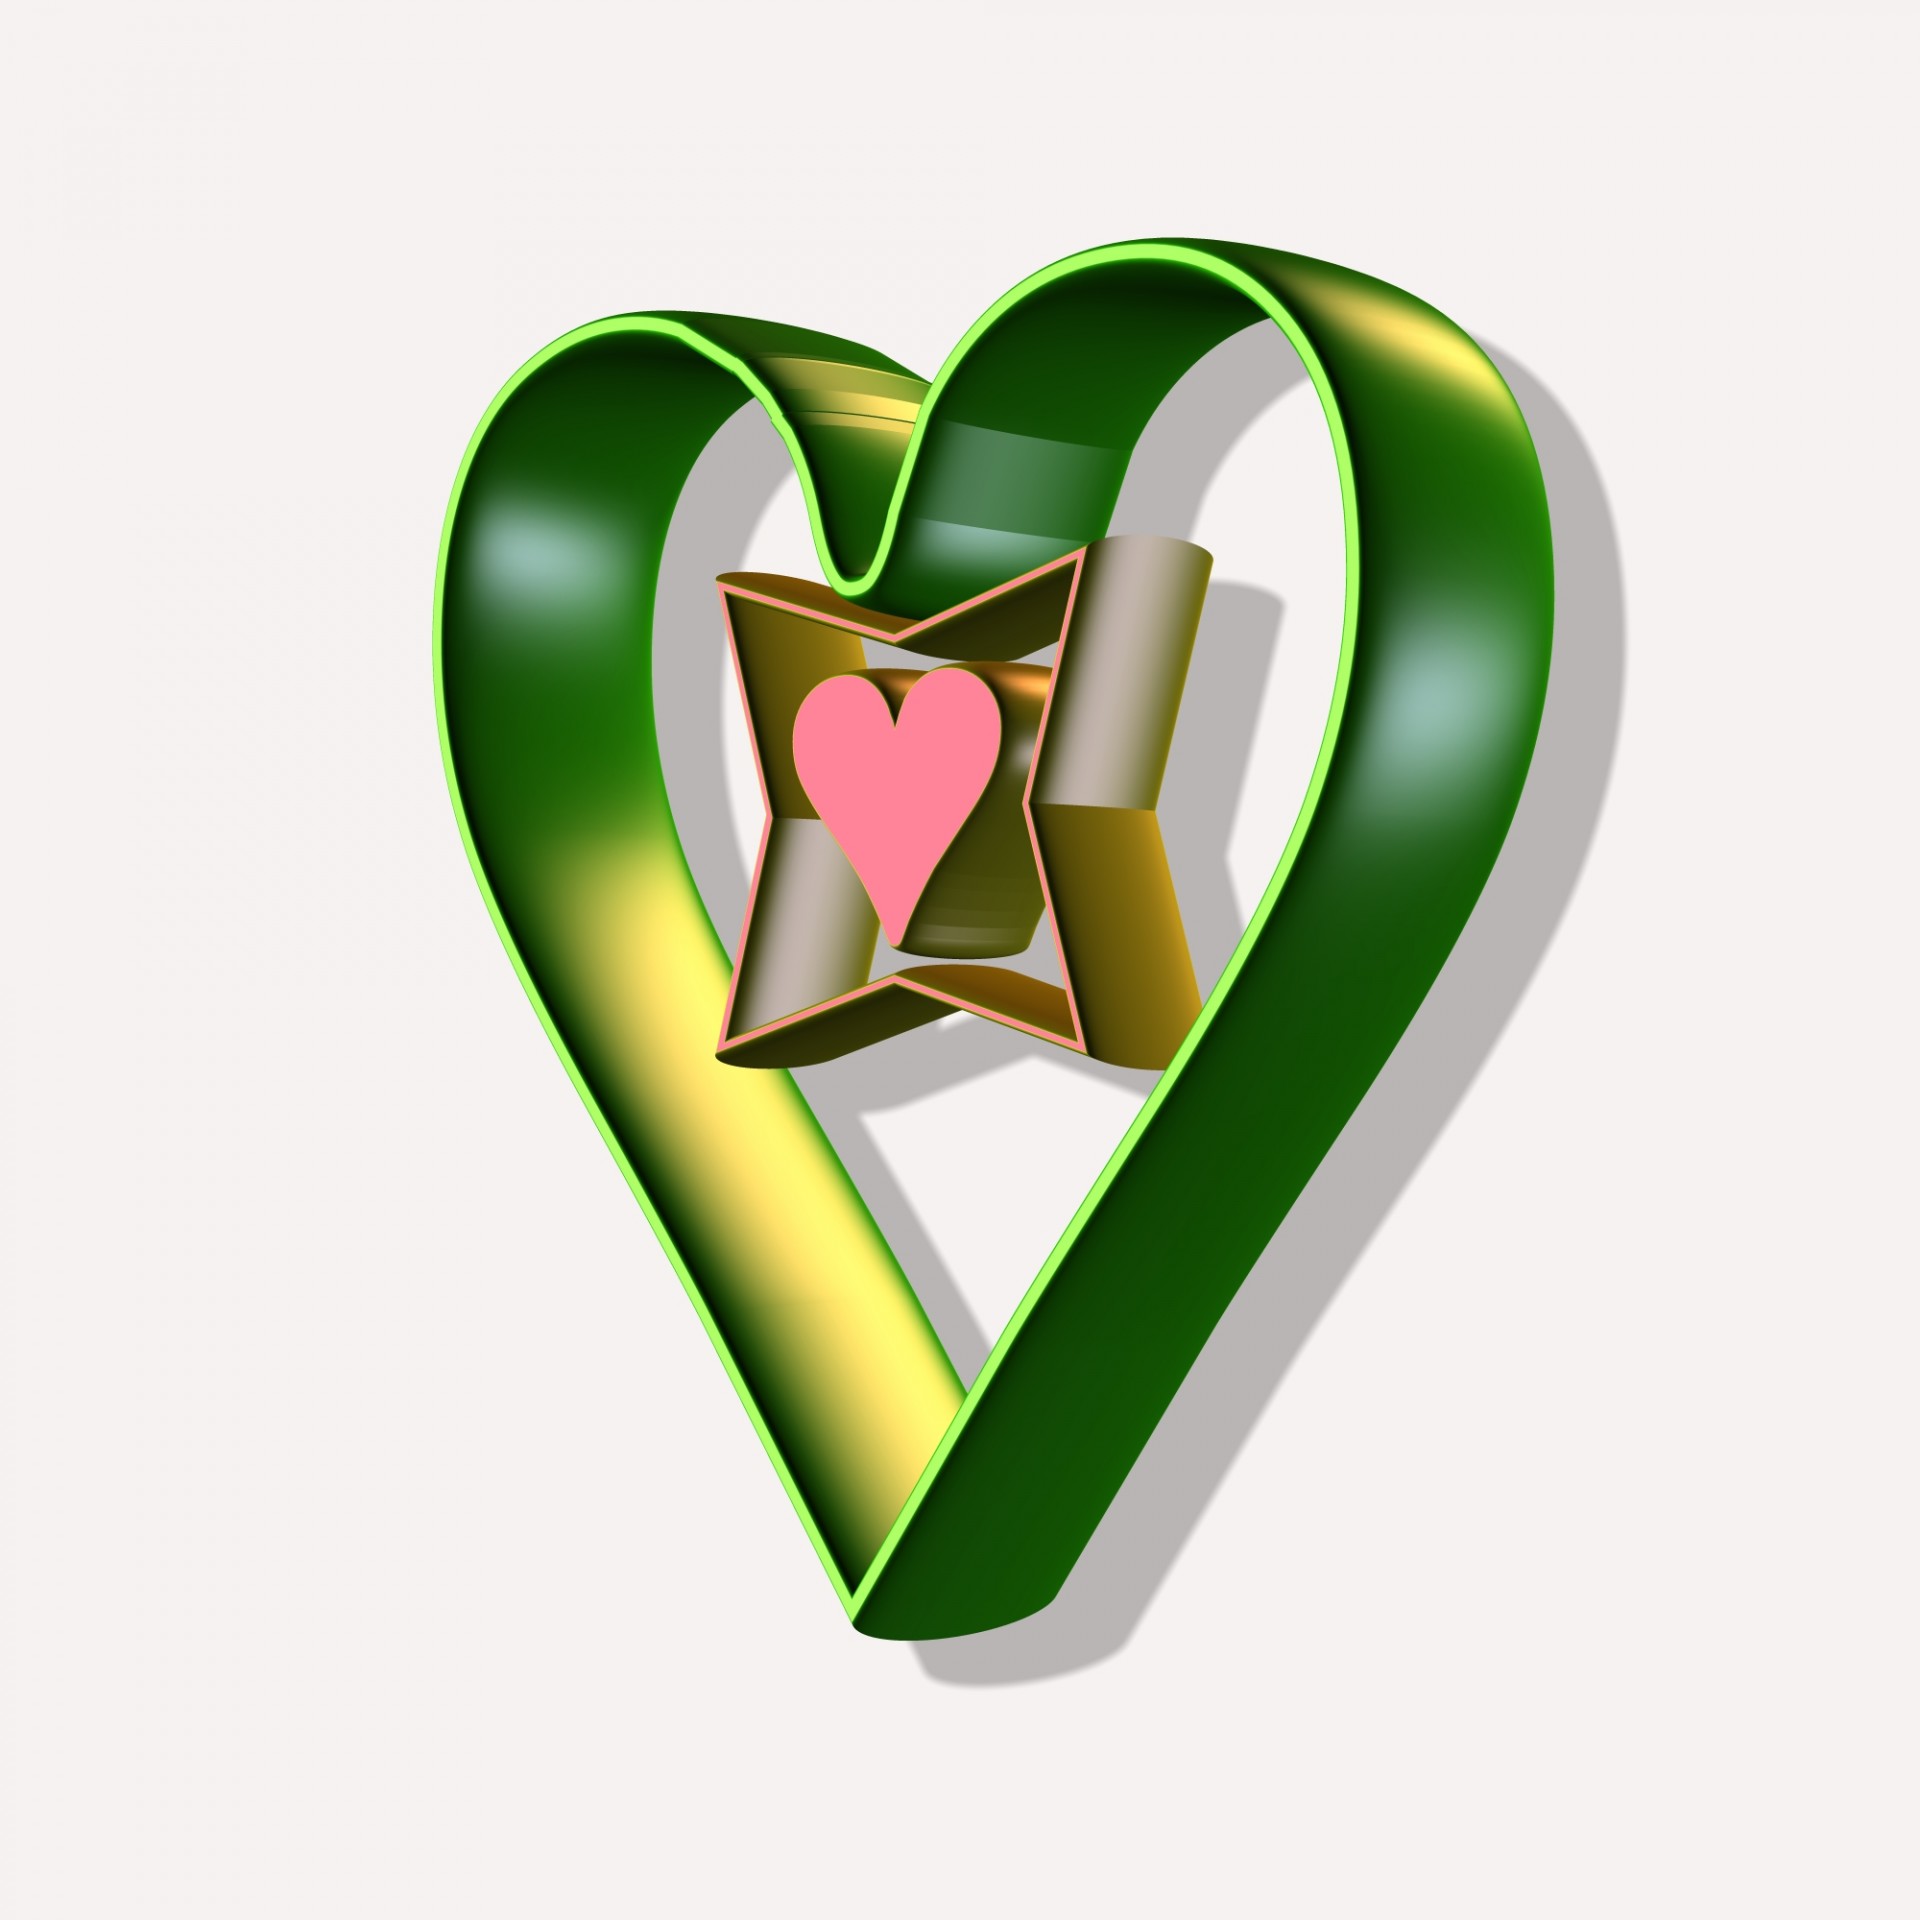 Green Heart In 3D